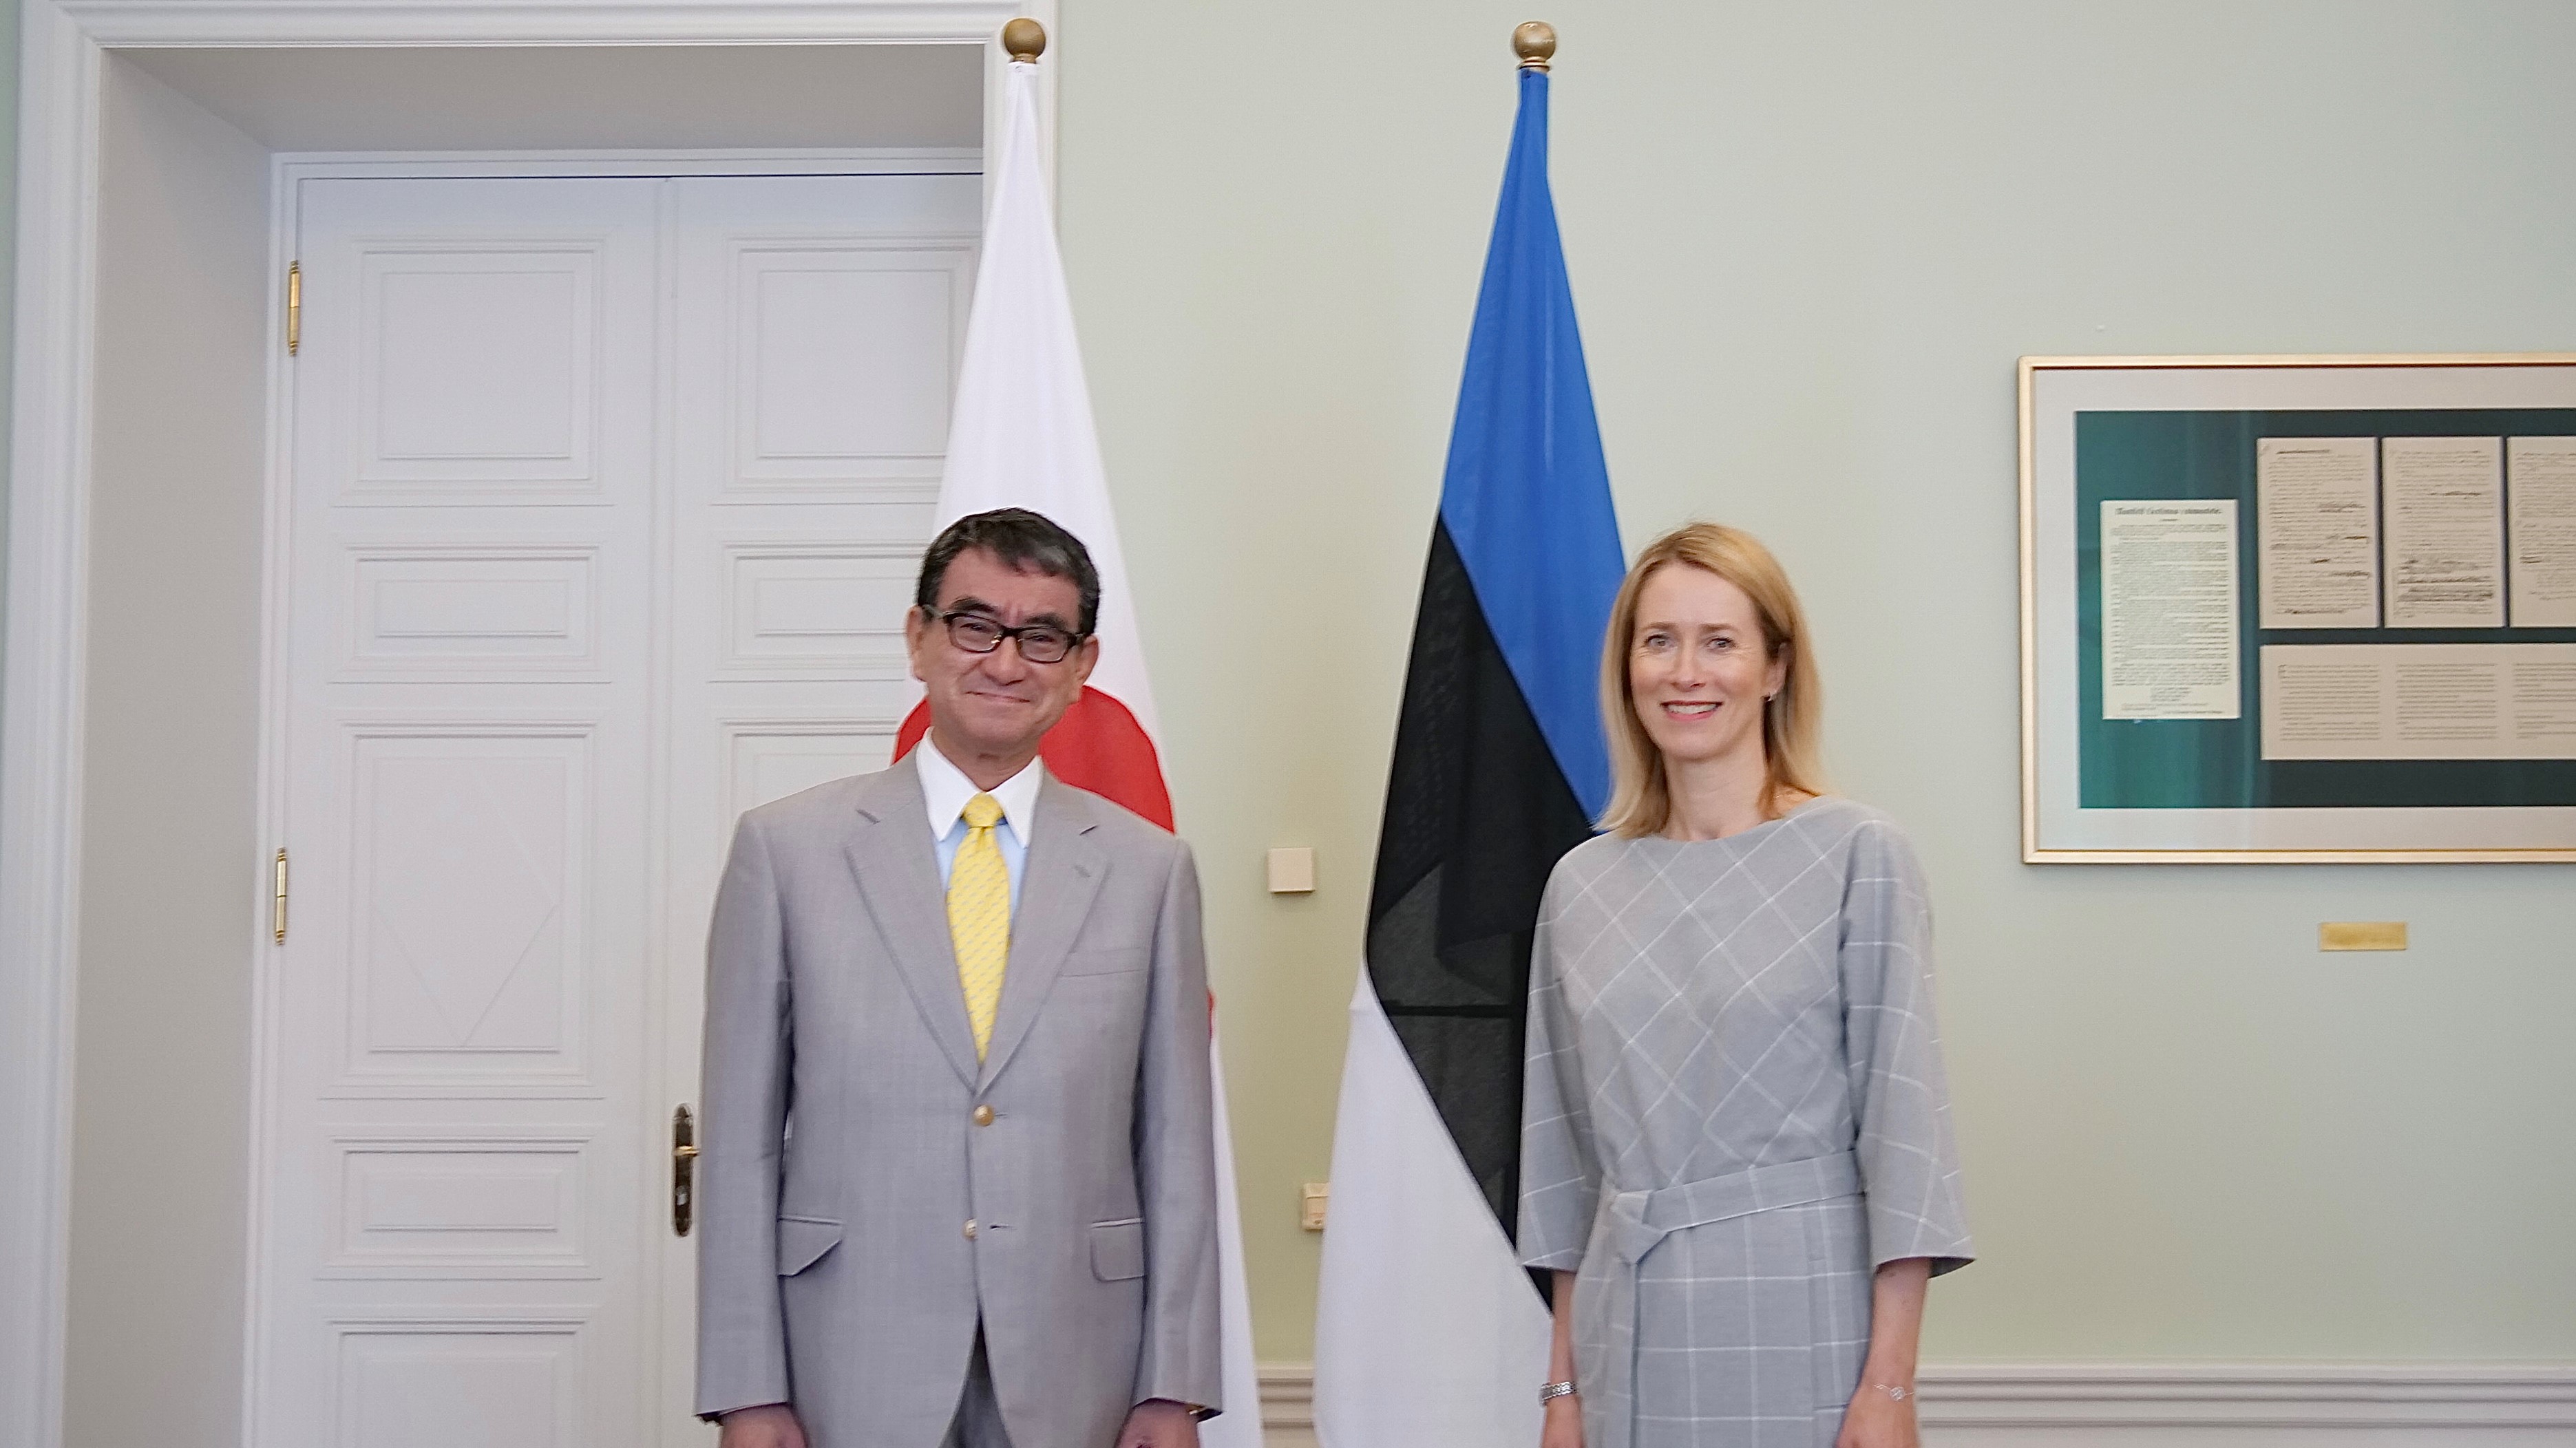 左に河野デジタル大臣、右にエストニアのカヤ・カラッス首相が並んで写っている。